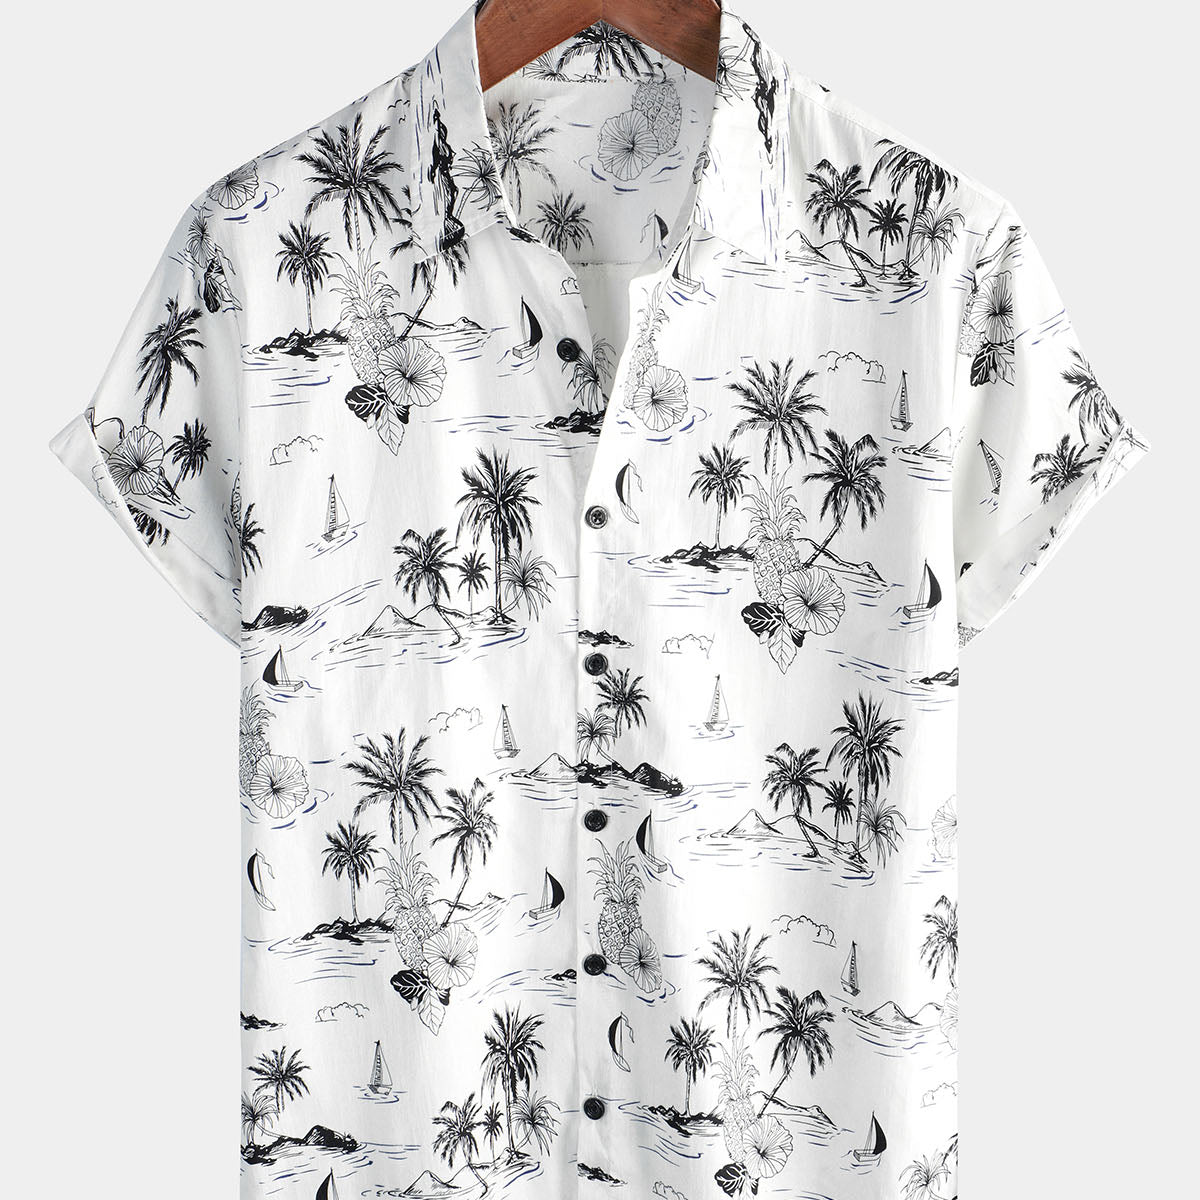 Chemise hawaïenne blanche à manches courtes Aloha pour homme avec imprimé palmier et ananas tropical